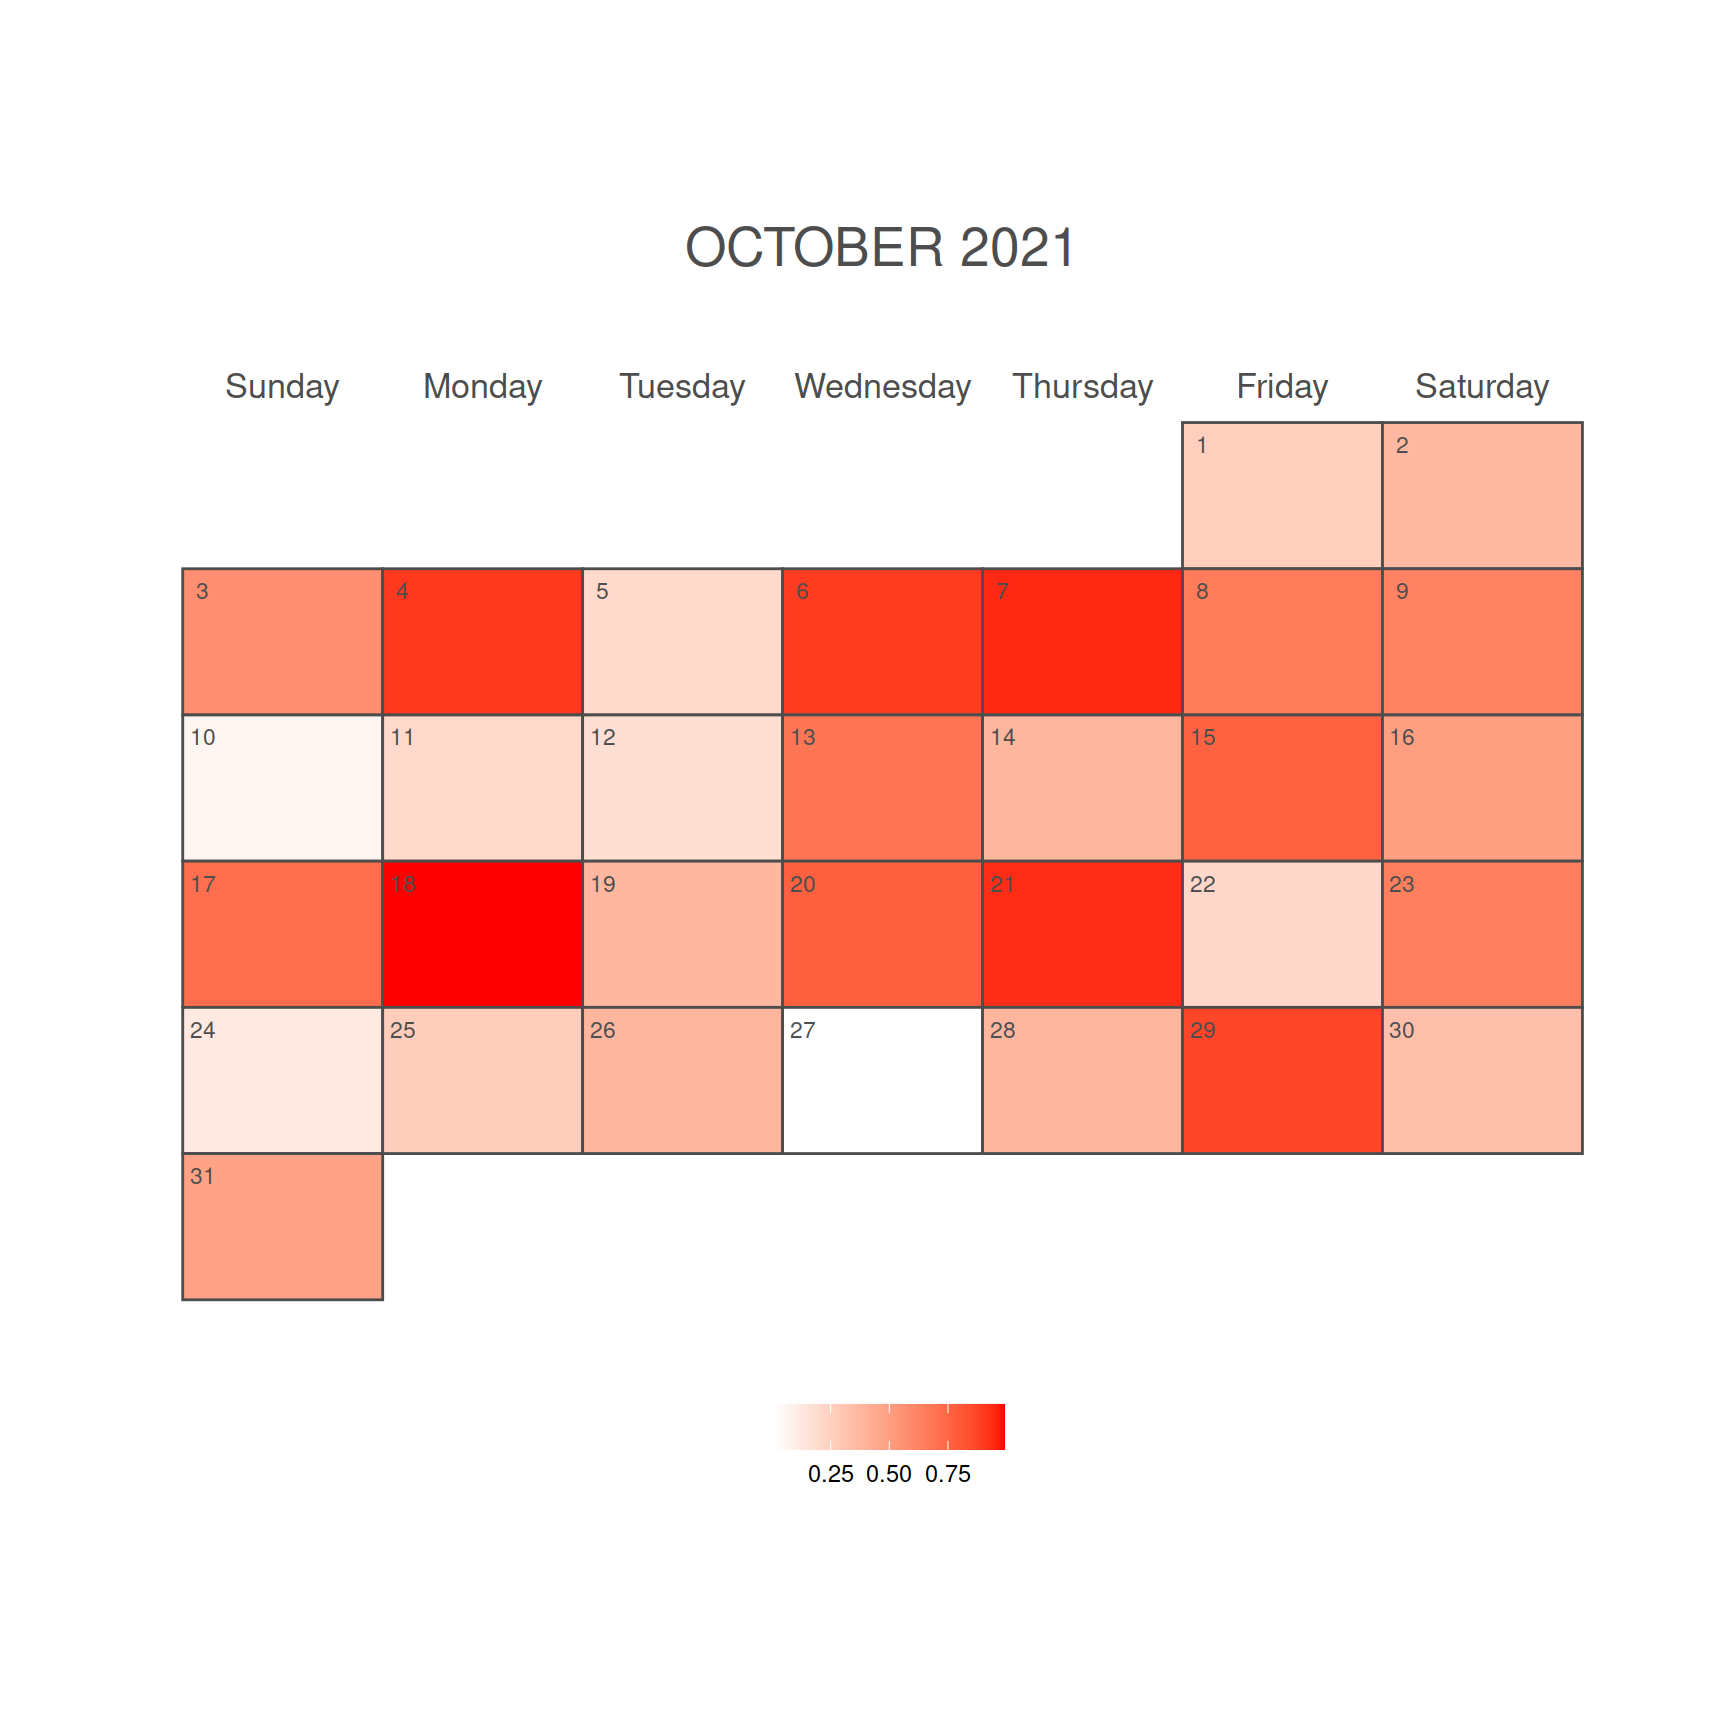 Calendario mensual como mapa de calor en R